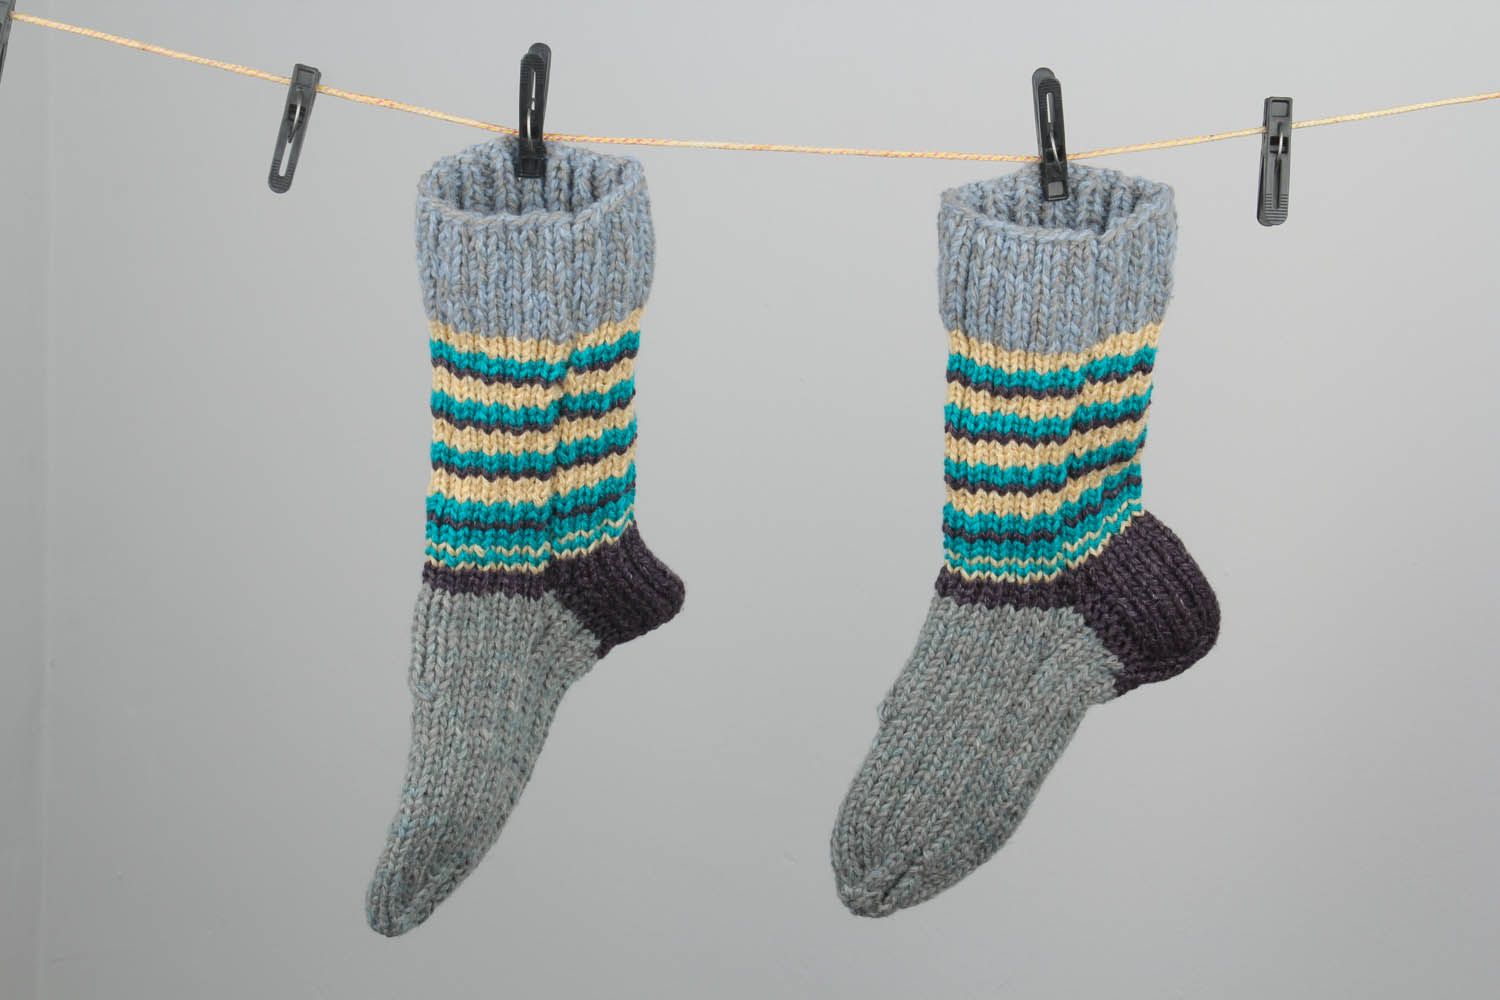 Chaussettes faites main tricotées en laine photo 1